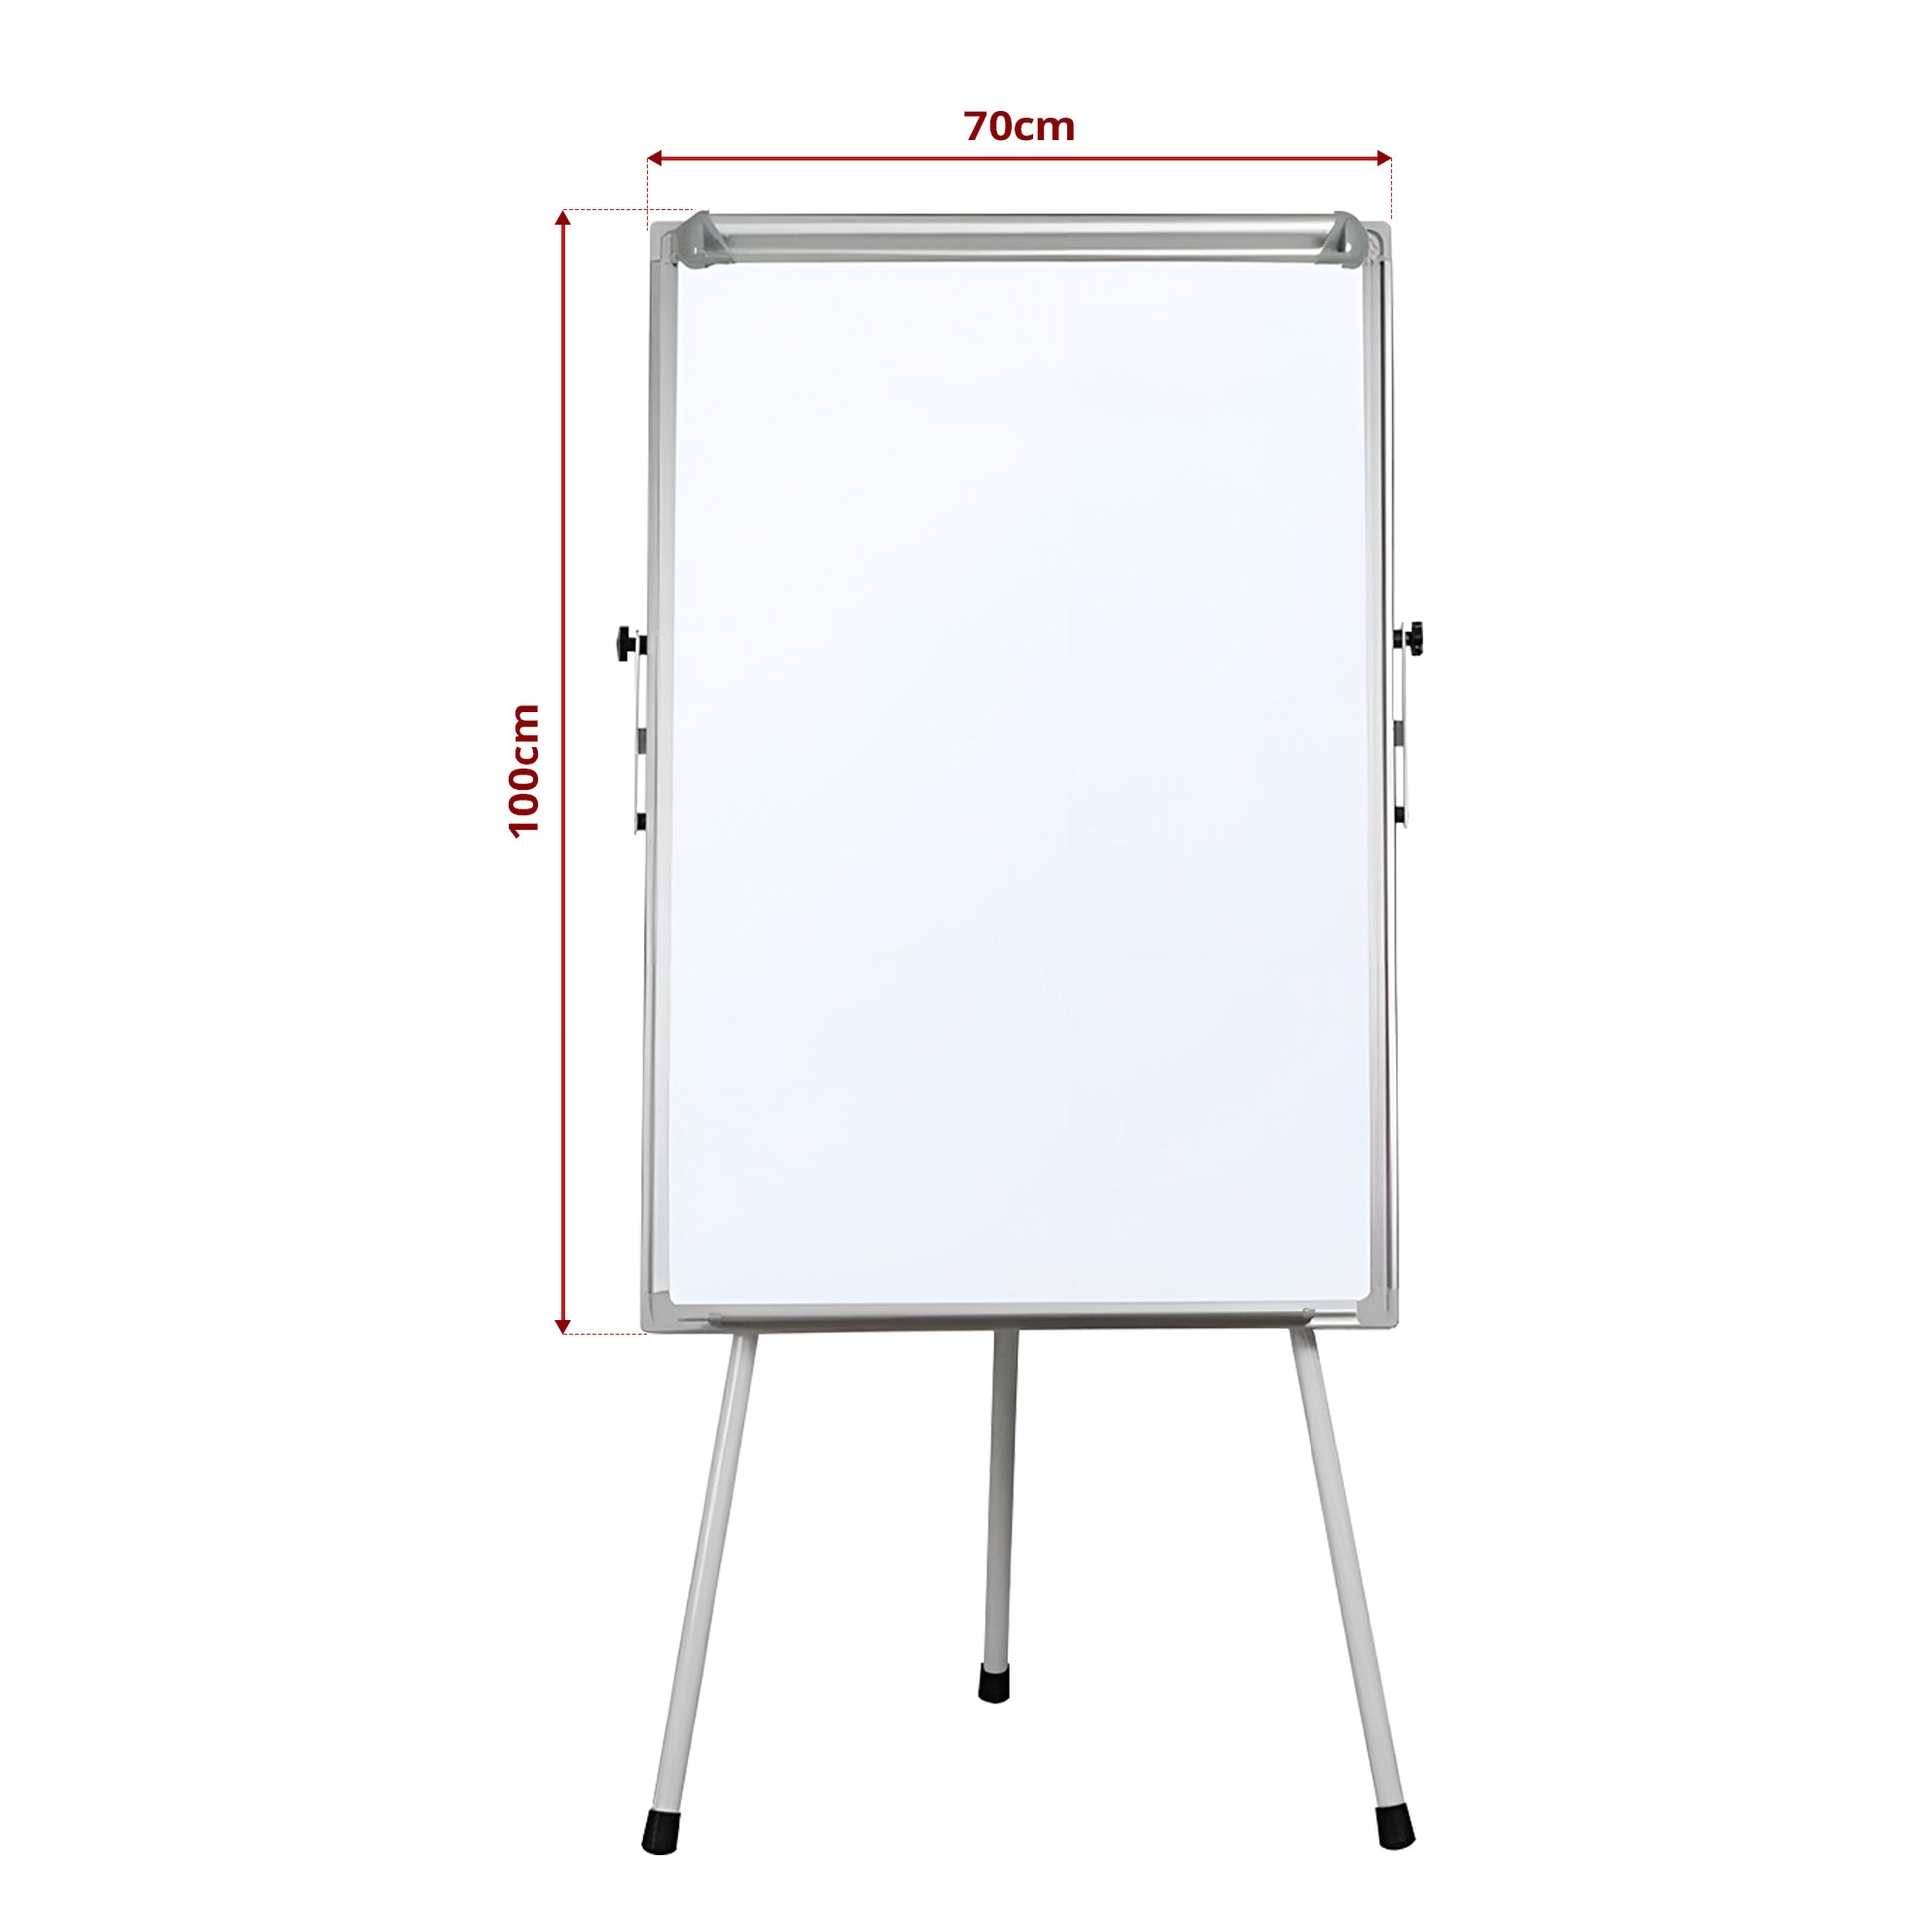 white board size image